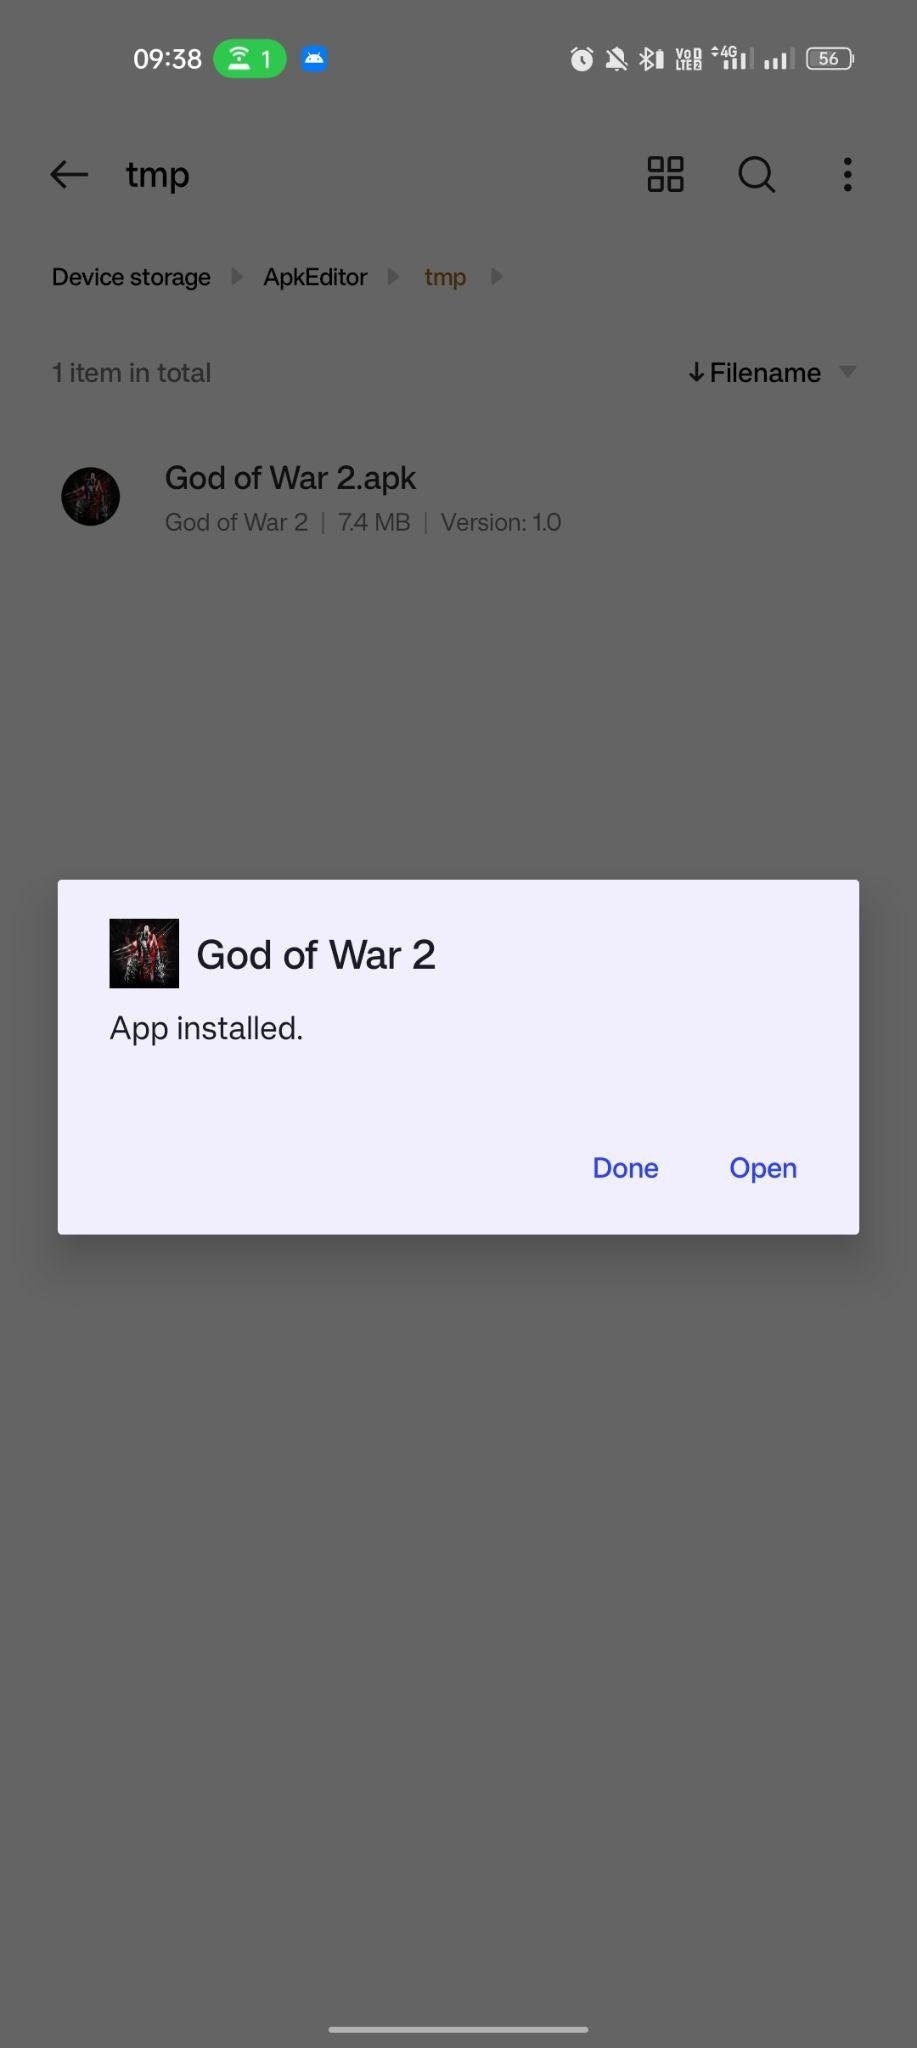 God of War 2 apk installed